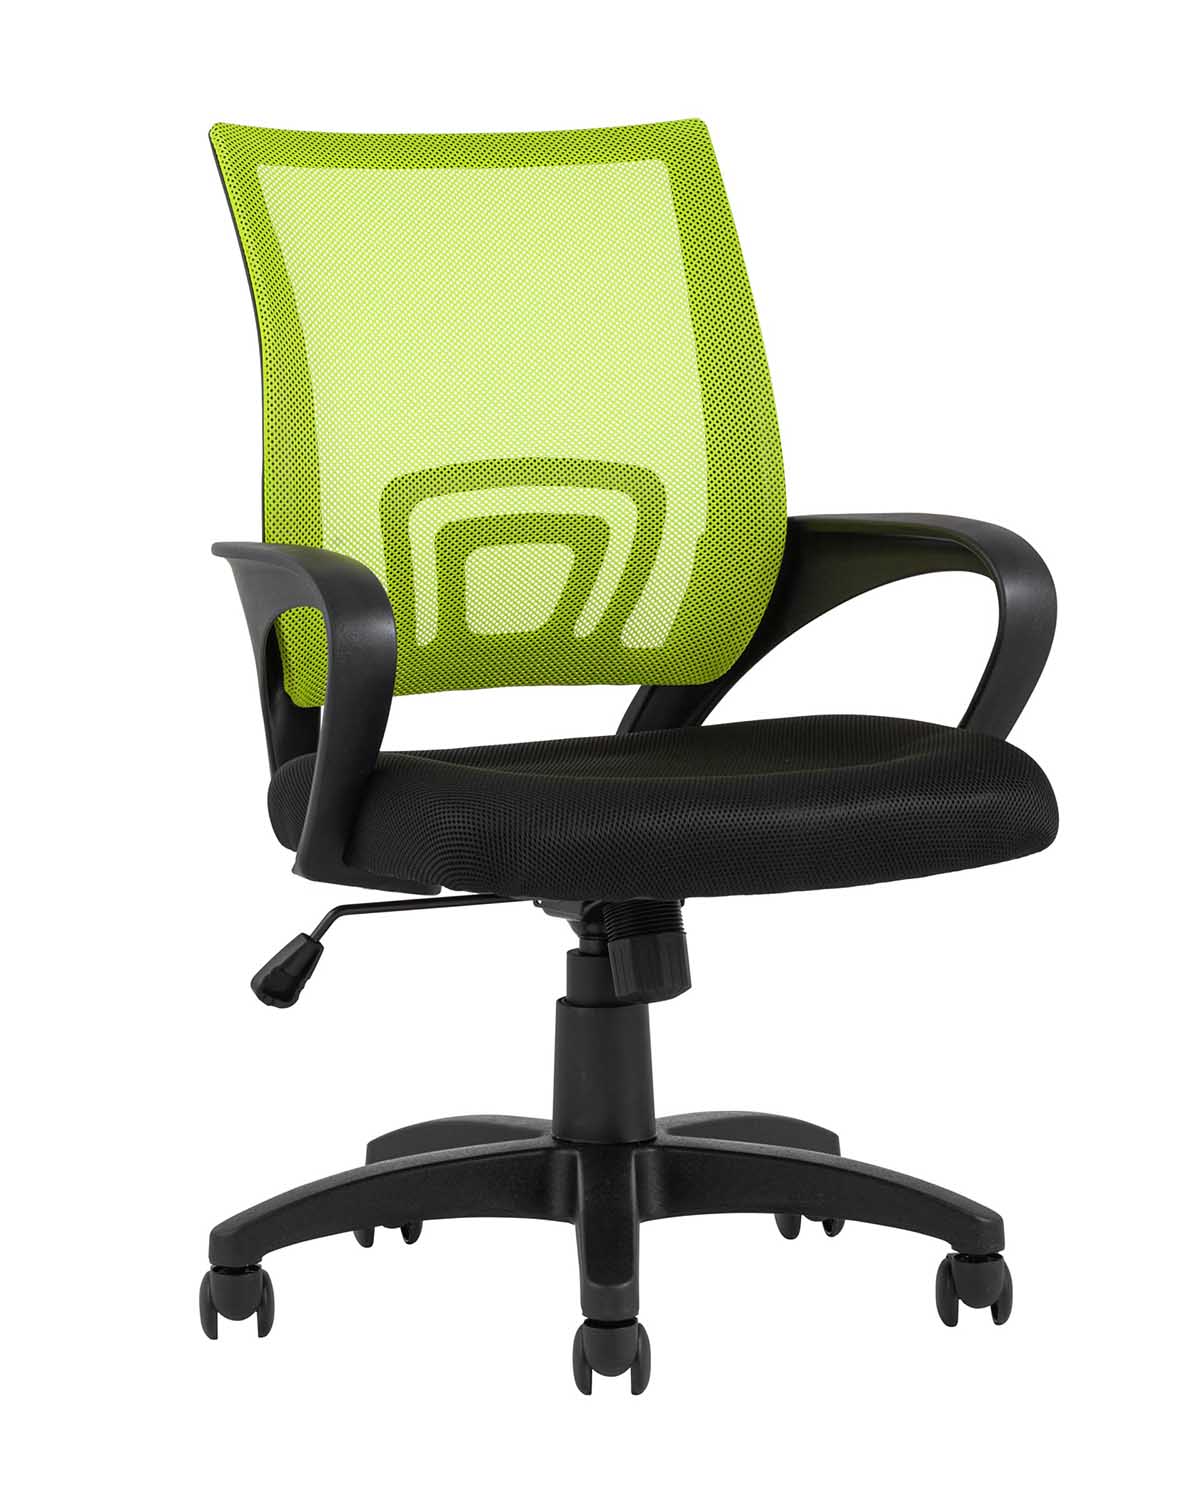 Компьютерное кресло TopChairs Simple офисное зеленое в обивке из текстиля с сеткой, механизм качания Top Gun